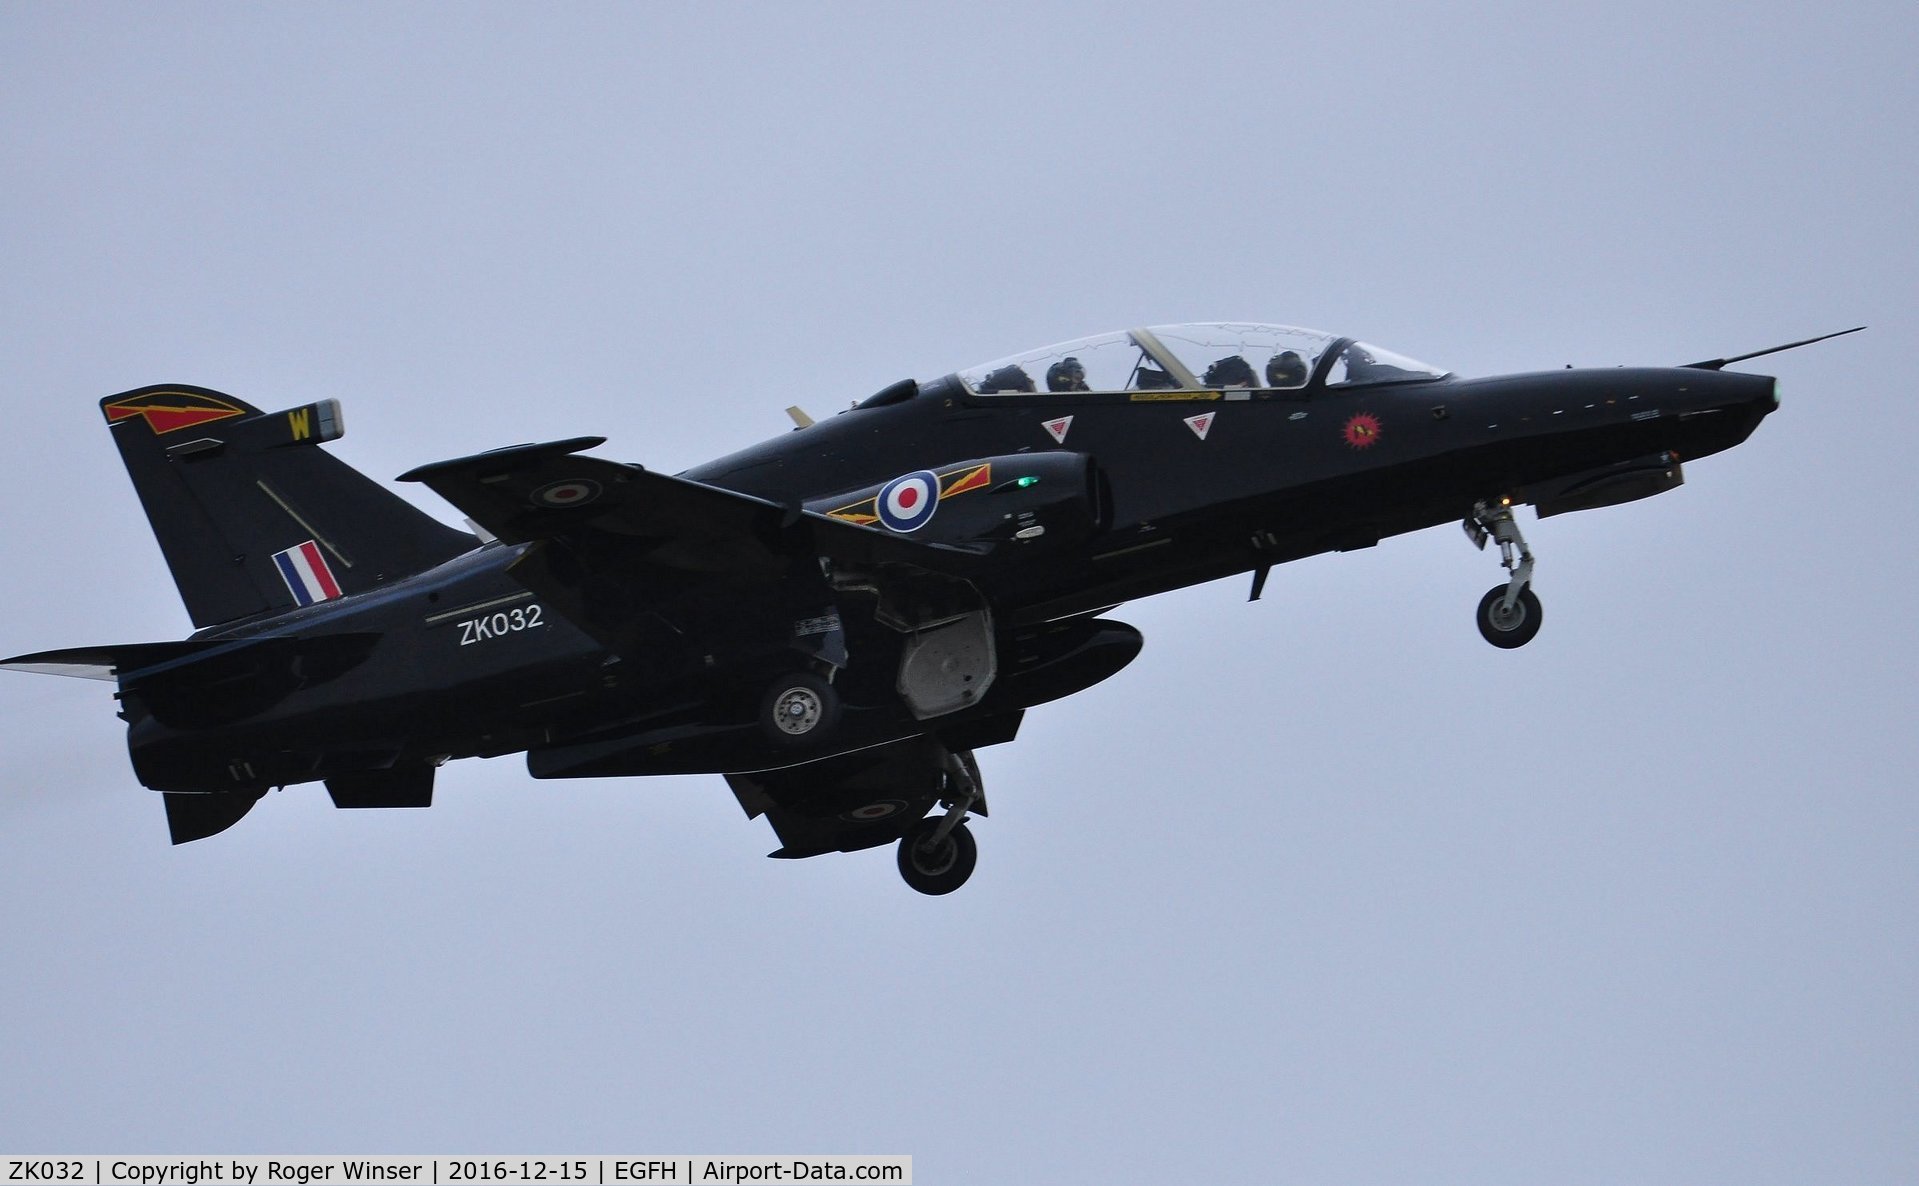 ZK032, 2009 British Aerospace Hawk T2 C/N RT023/1261, RAF Hawk T.2 aircraft coded W of 4(R) Squadron over Runway 04.